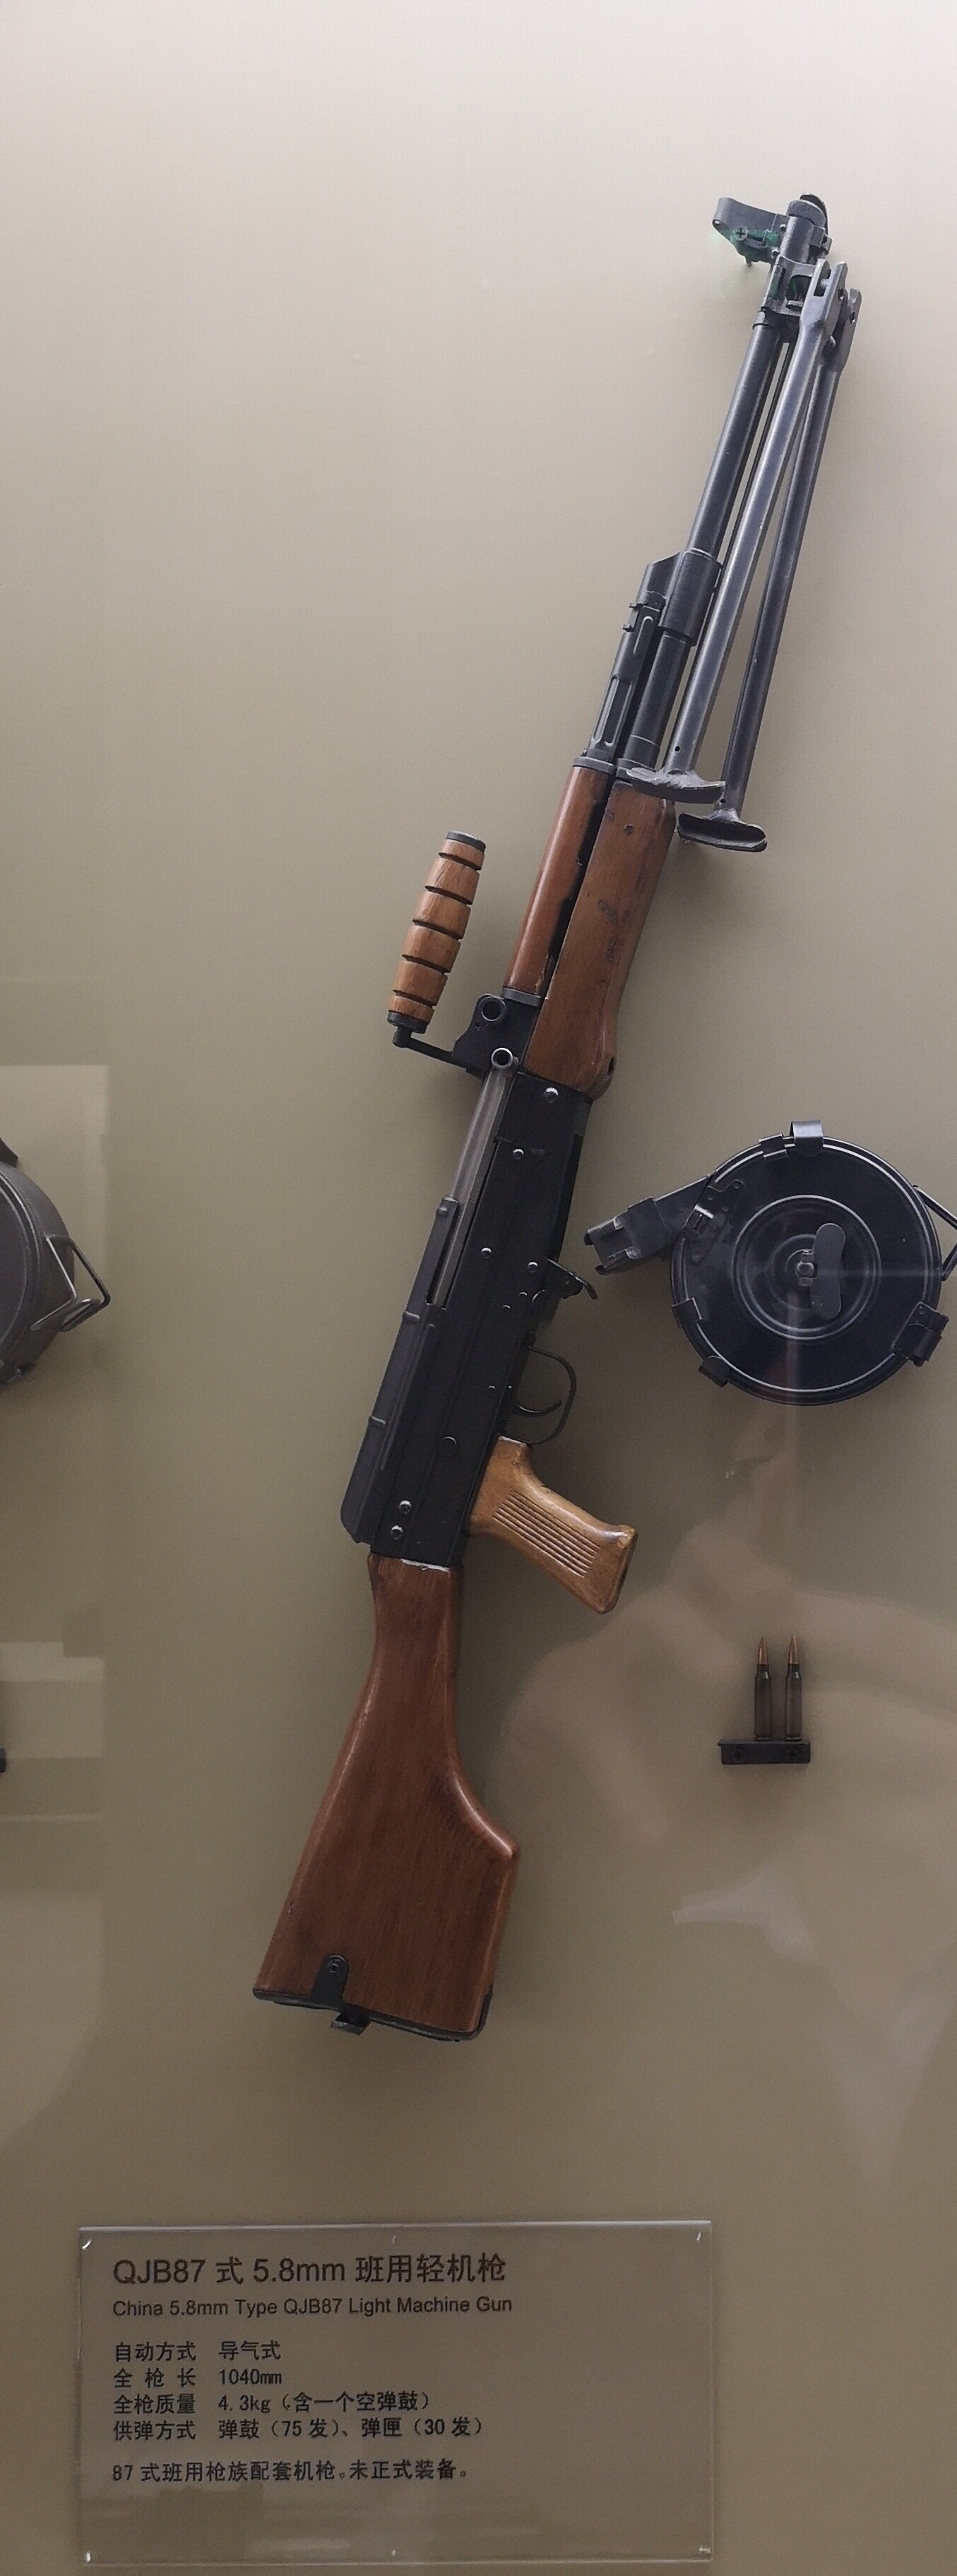 之前本人保存的某贴吧吧友去轻武器博物馆拍下的qjb-87式班用机枪.